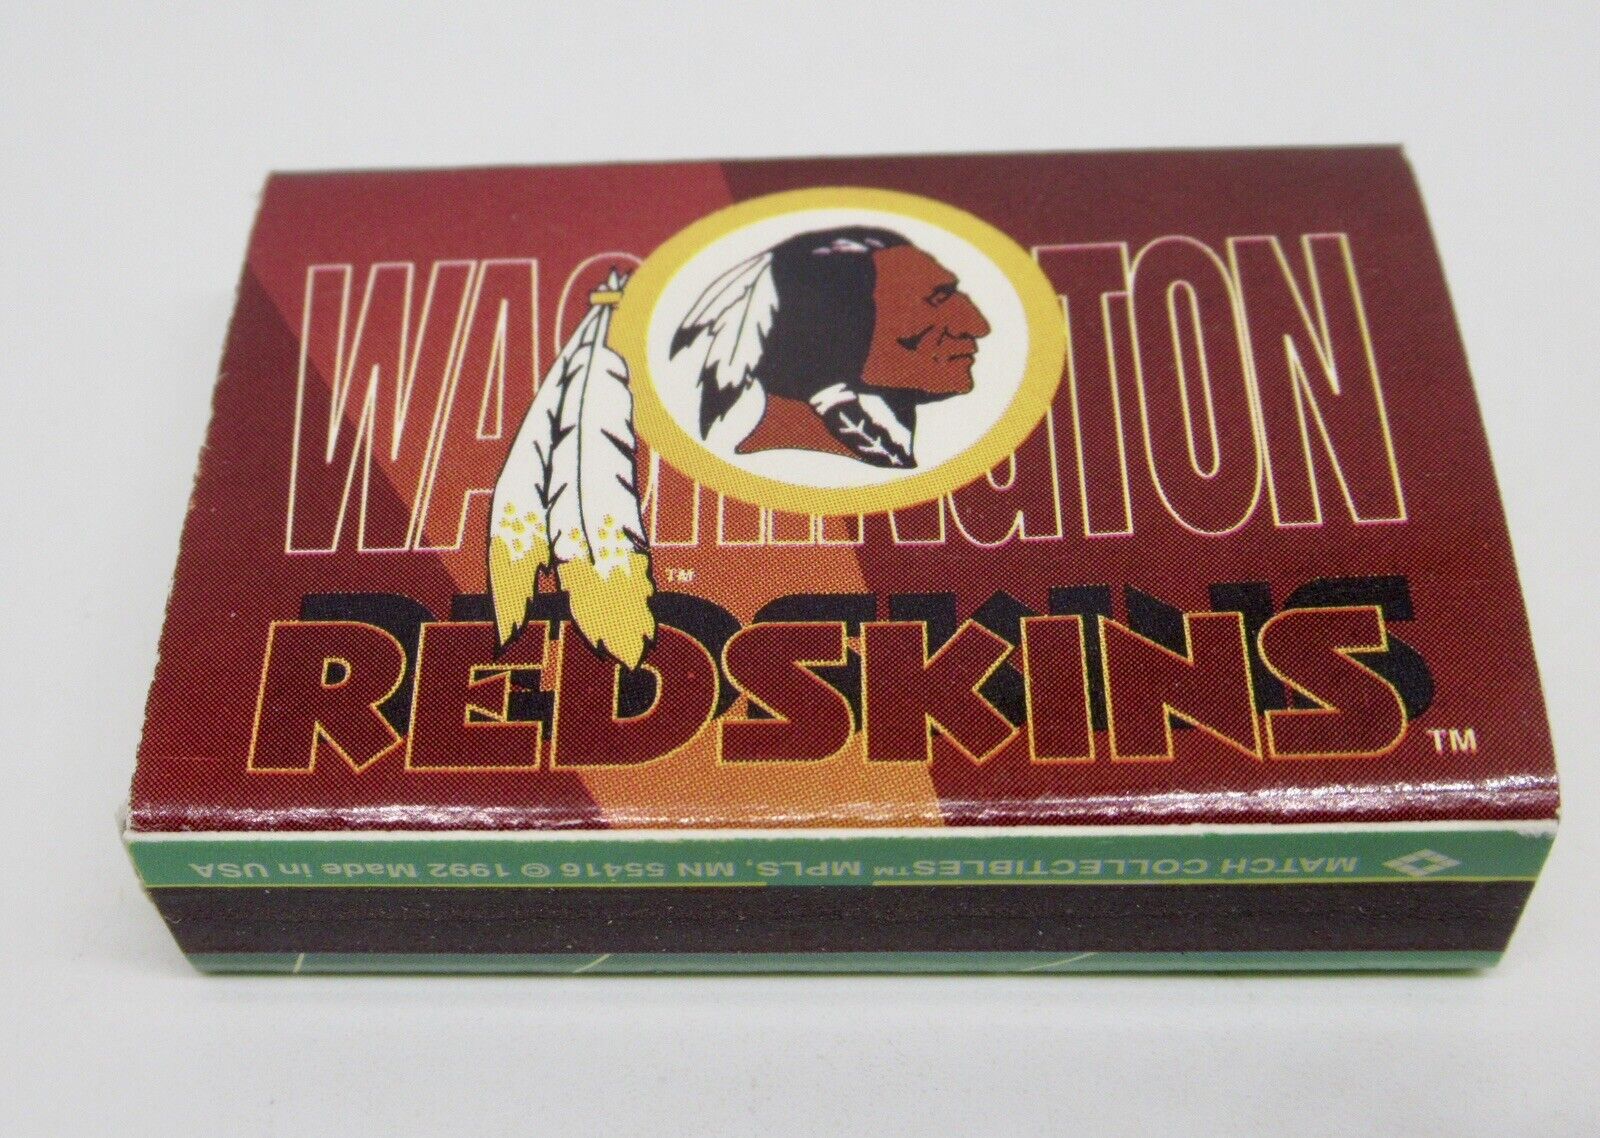 Washington Redskins NFL Football Team Matchbook / Matchbox